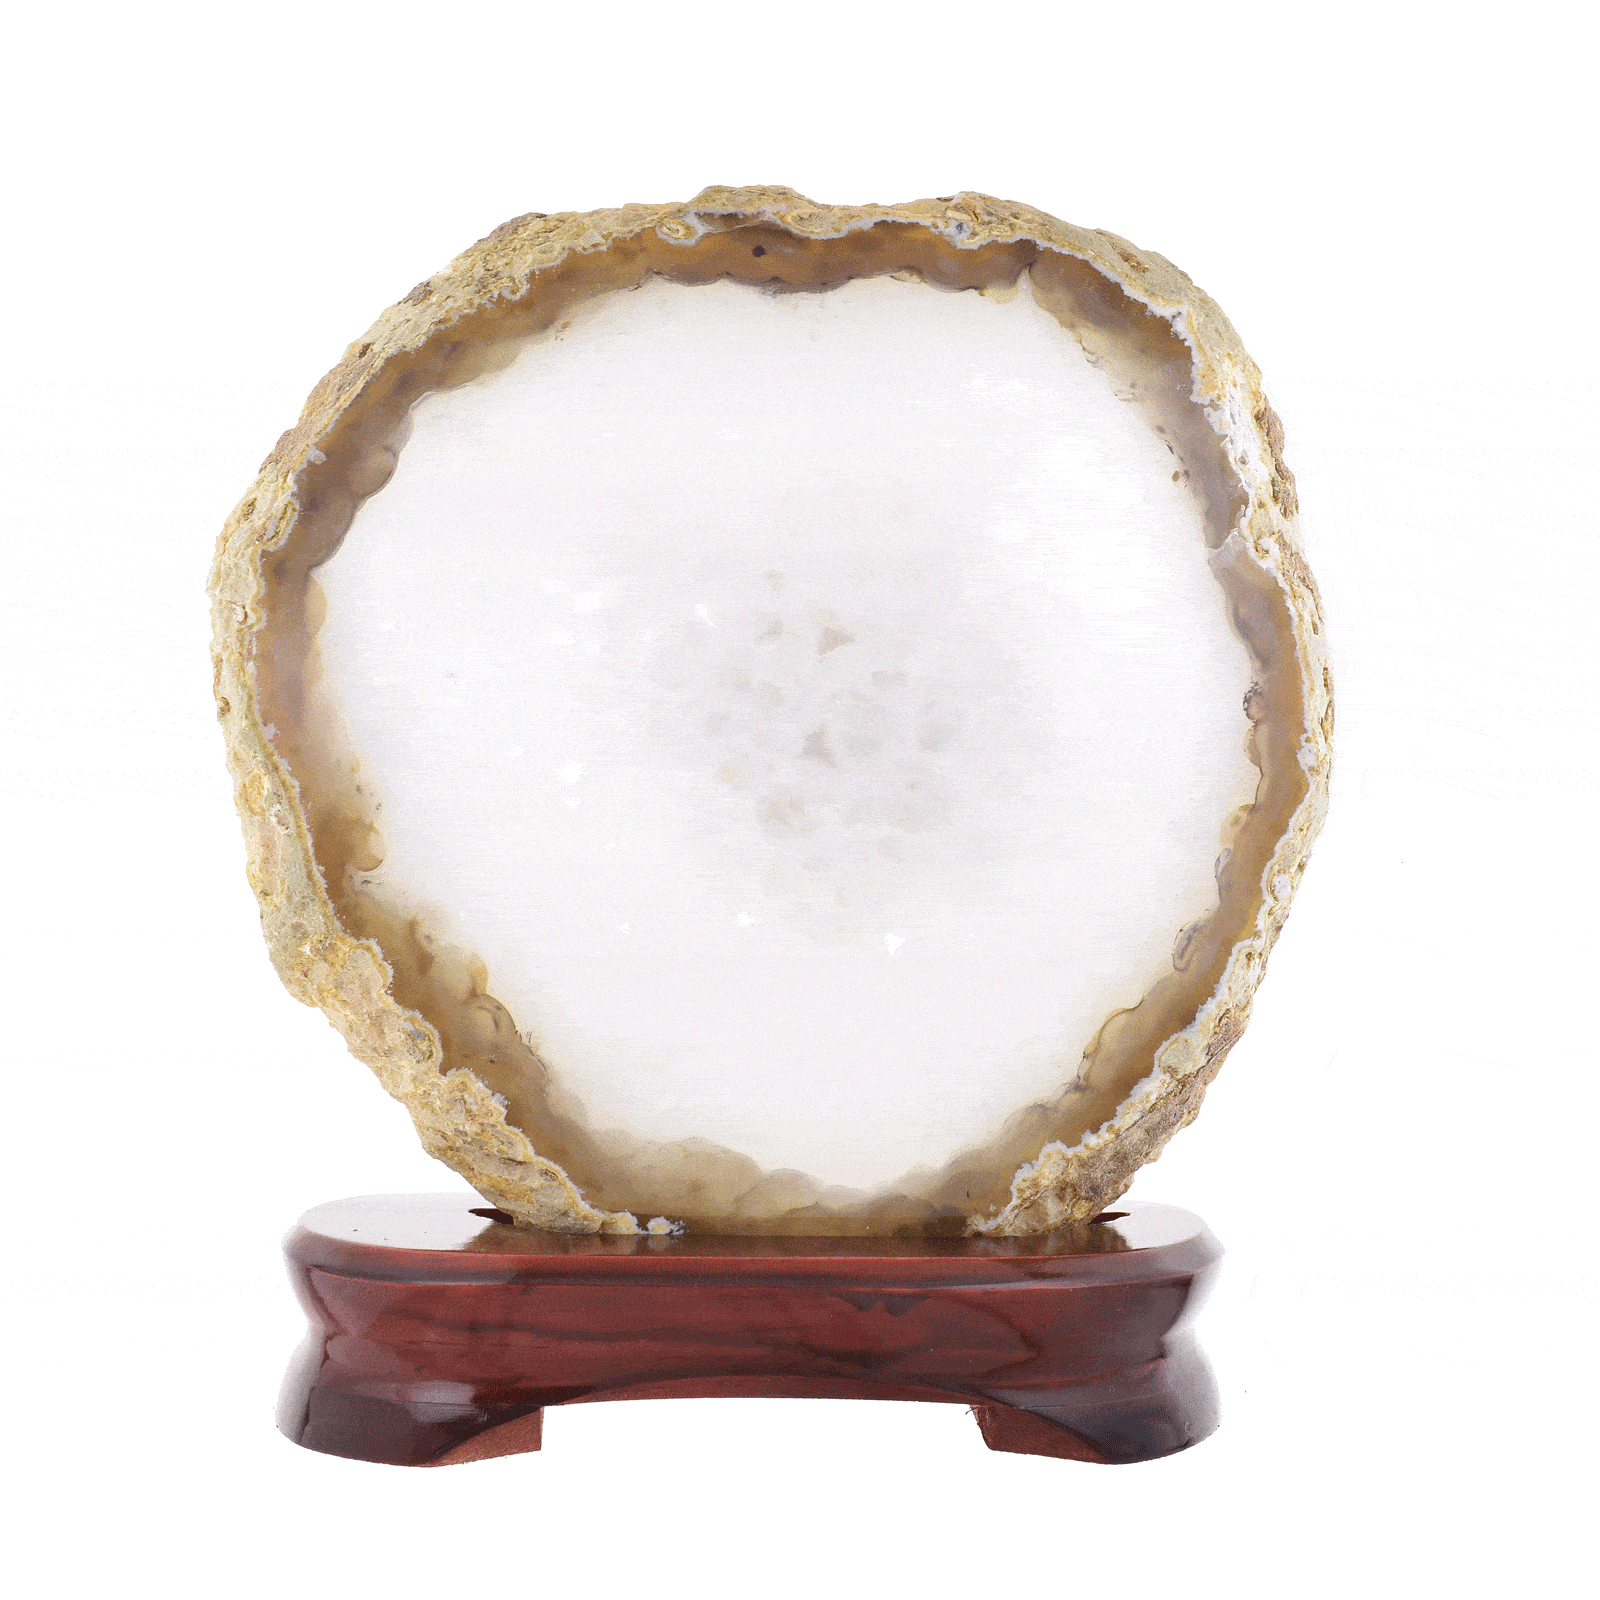 Φέτα φυσικής πέτρας Αχάτη με κρύσταλλα χαλαζία, τοποθετημένη σε ξύλινη βάση. Ο Αχάτης είναι γυαλισμένος στις δύο όψεις του και έχει ύψος 19cm. Αγοράστε online shop.